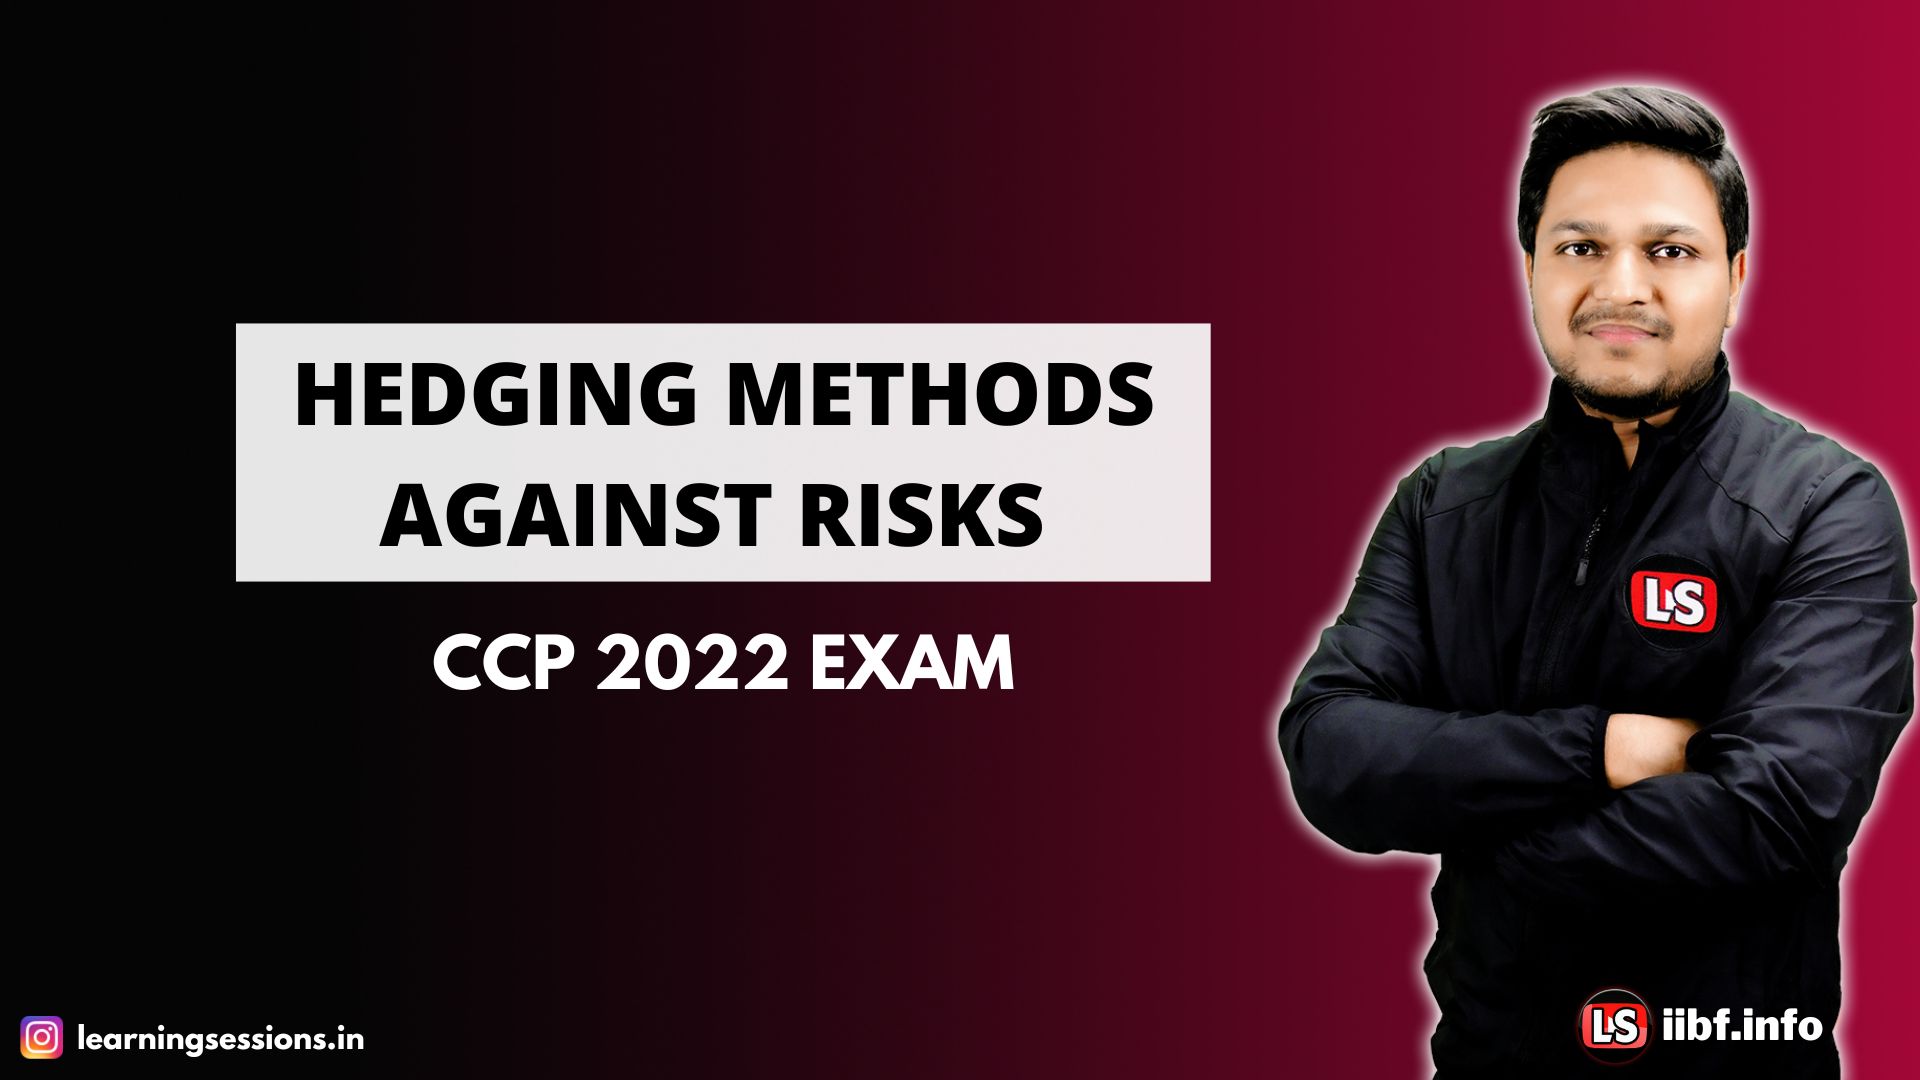 HEDGING METHODS AGAINST RISKS | CCP 2022 EXAM